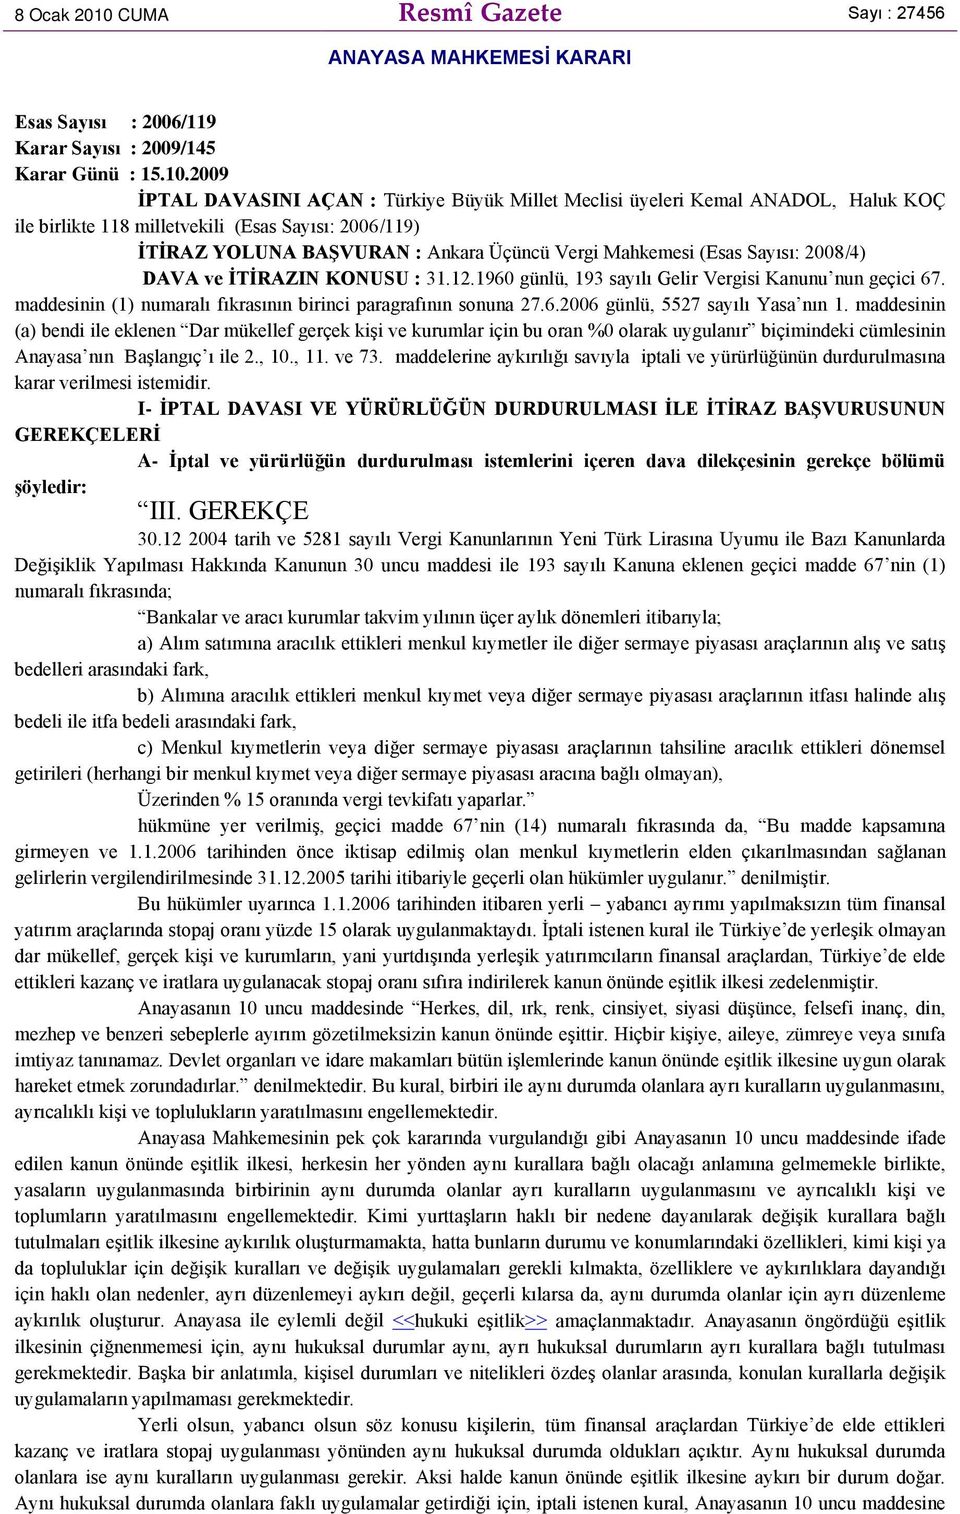 2009 İPTAL DAVASINI AÇAN : Türkiye Büyük Millet Meclisi üyeleri Kemal ANADOL, Haluk KOÇ ile birlikte 118 milletvekili (Esas Sayısı: 2006/119) İTİRAZ YOLUNA BAŞVURAN : Ankara Üçüncü Vergi Mahkemesi